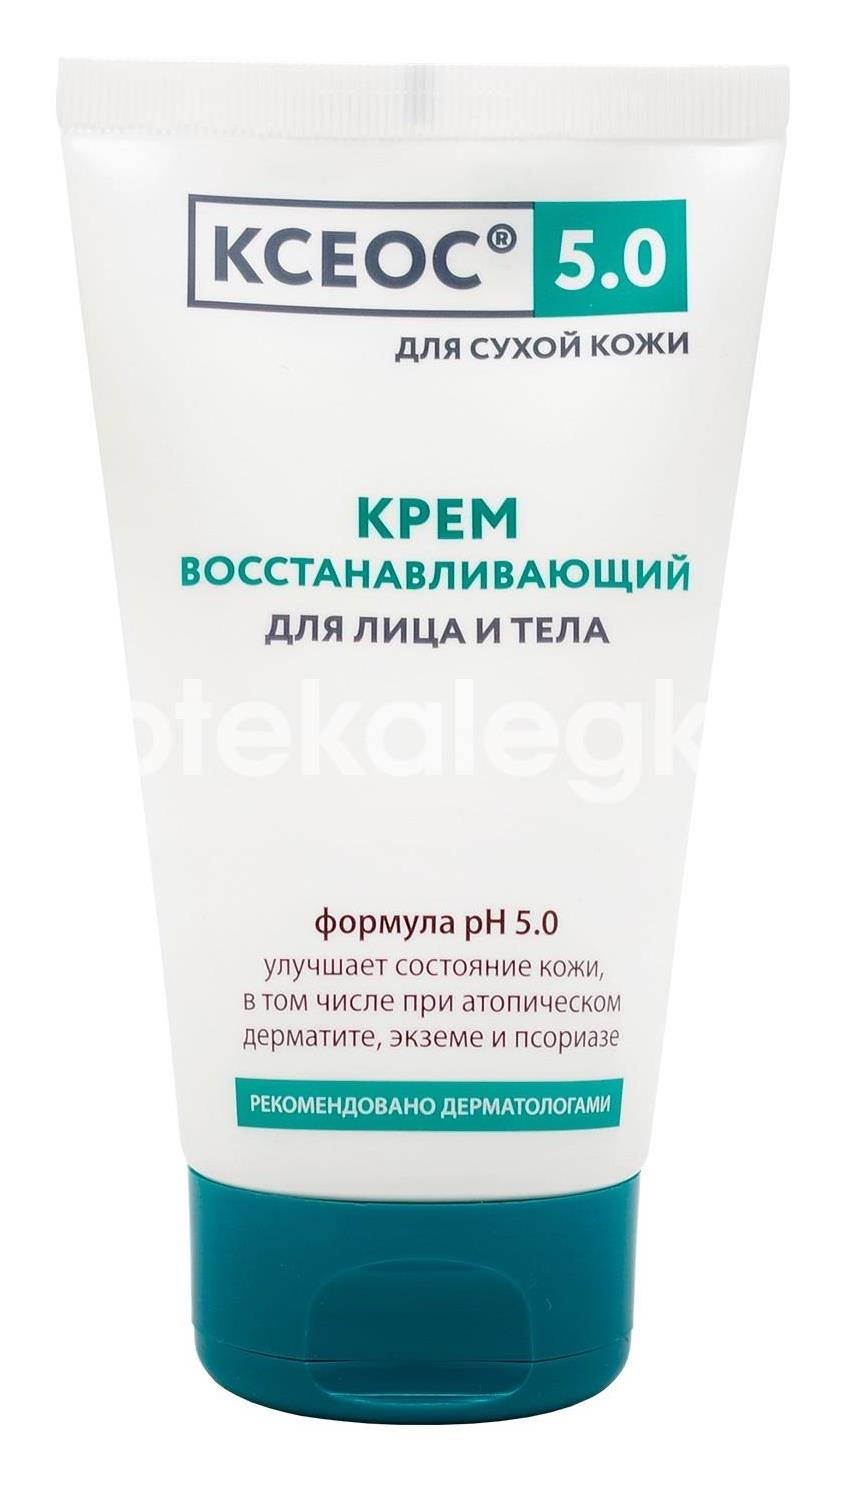 Ксеос ph 5.0 крем восстанавливающий для лица и тела при повышенной сухости кожи, 150 мл - 1